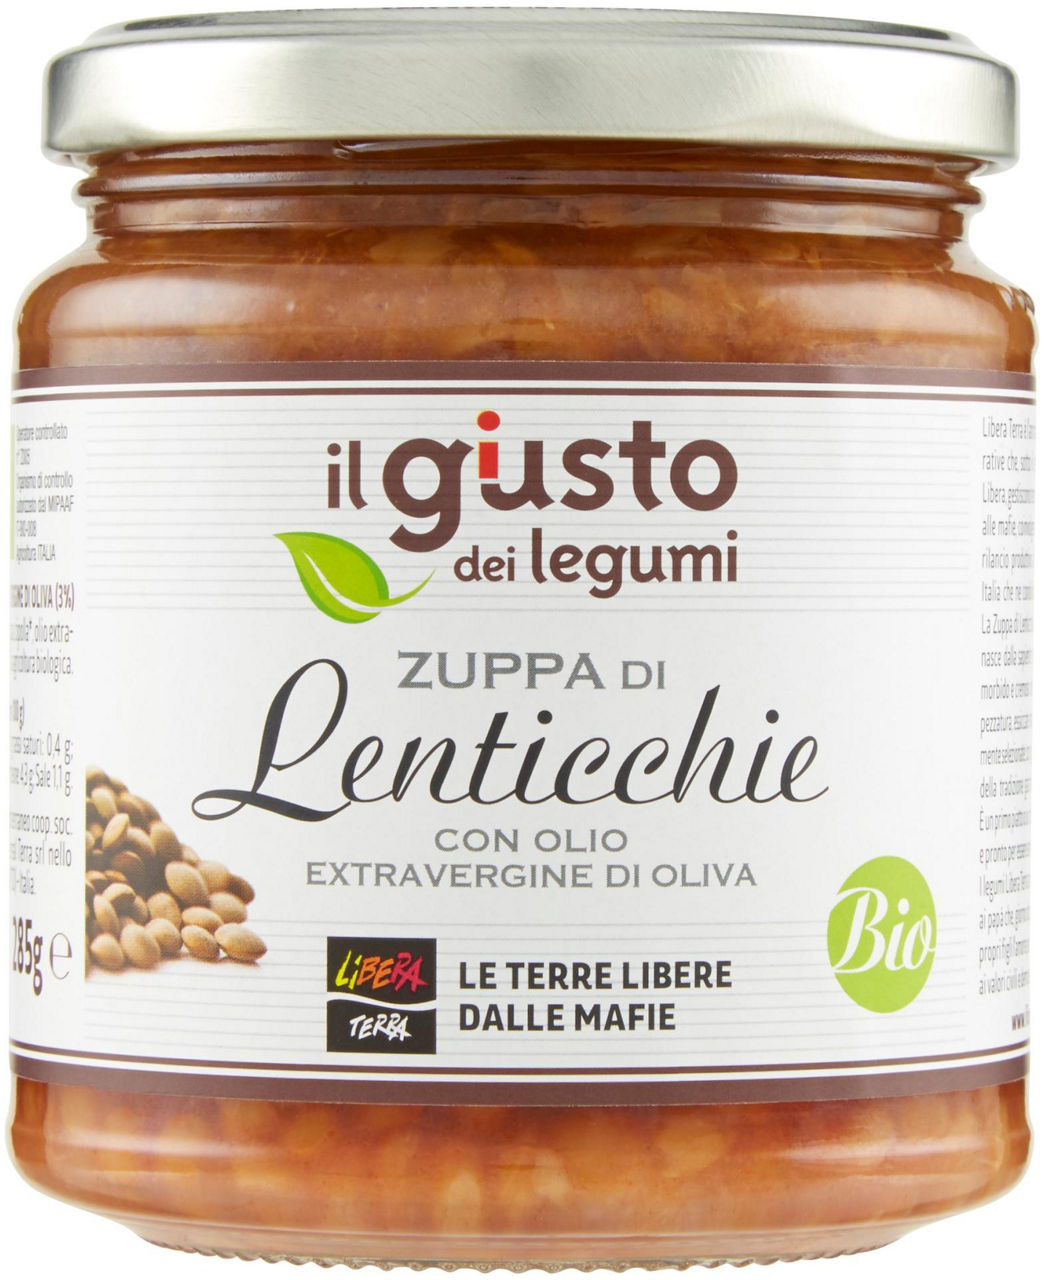 Zuppa di lenticchie biologica con olio extra vergine di oliva gr 285